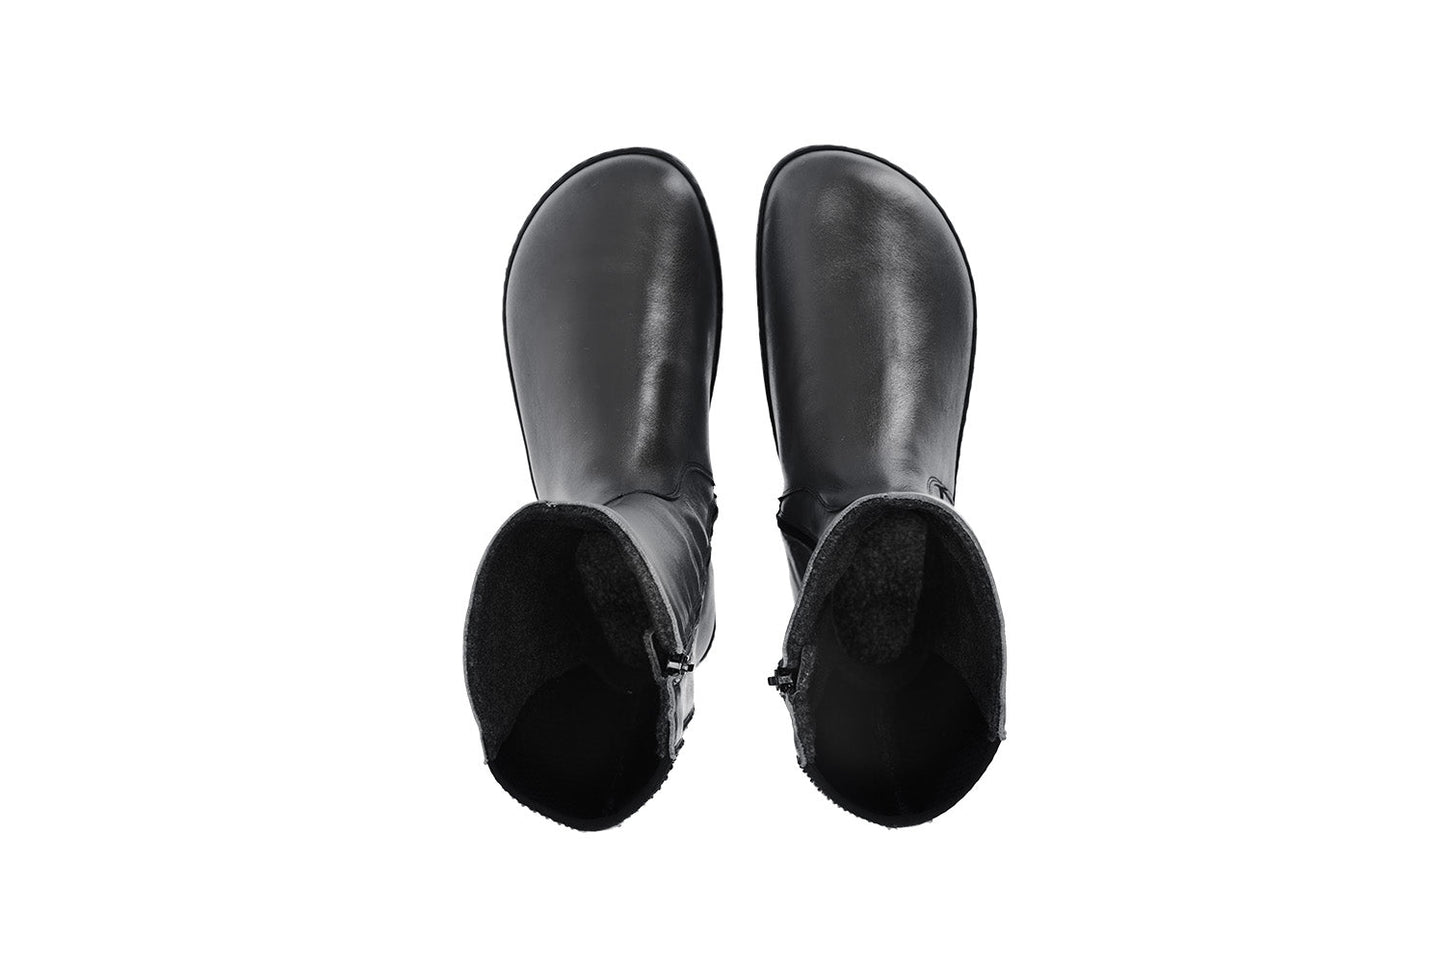 Barefoot long boots Be Lenka Charlotte - Black-Be Lenka-Cacles Barefoot